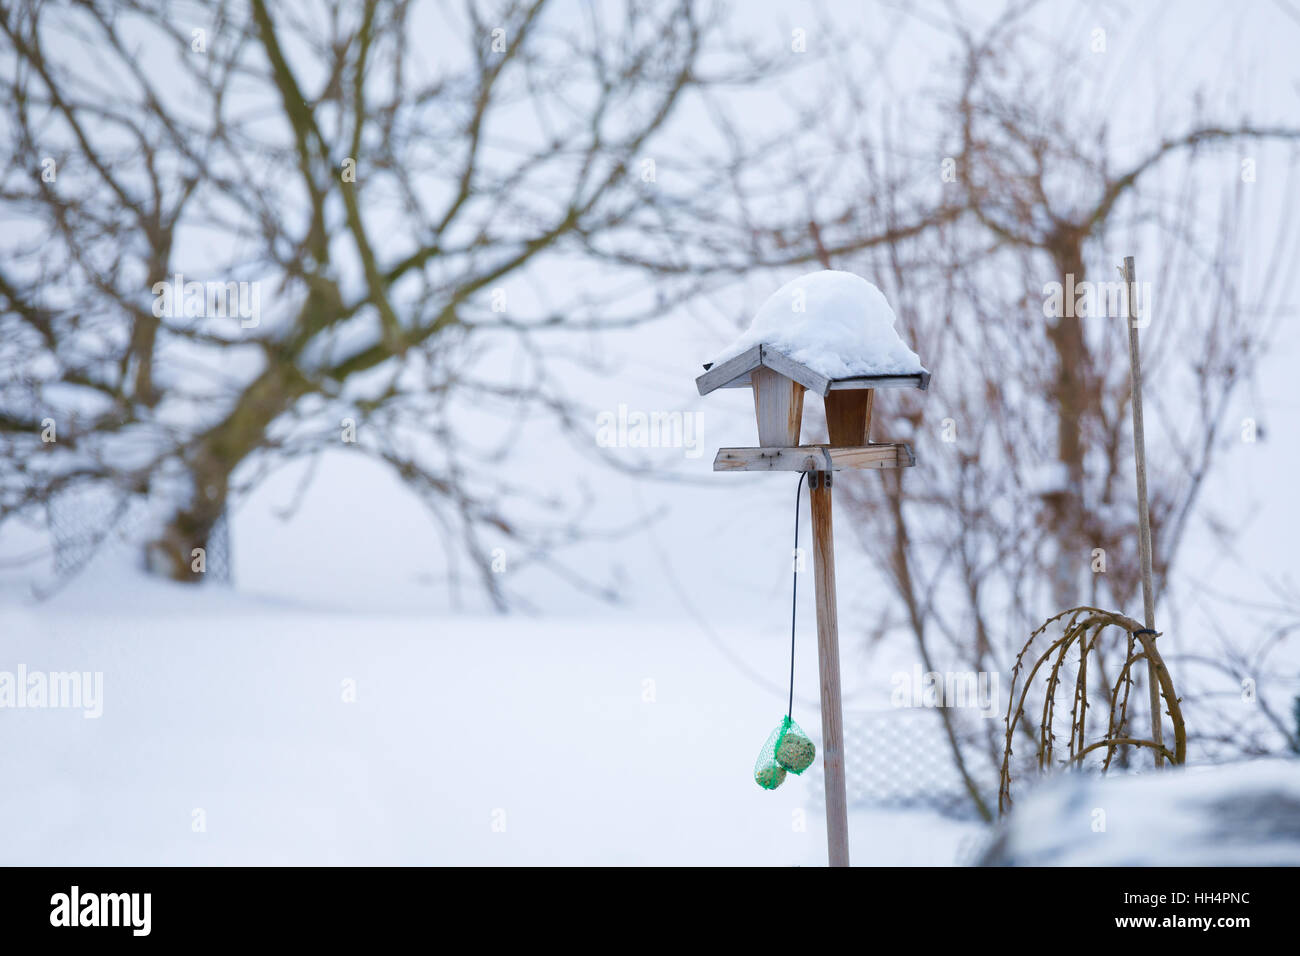 Semplice di legno artigianale birdhouse installato su giardino d inverno in giornata nevosa Foto Stock